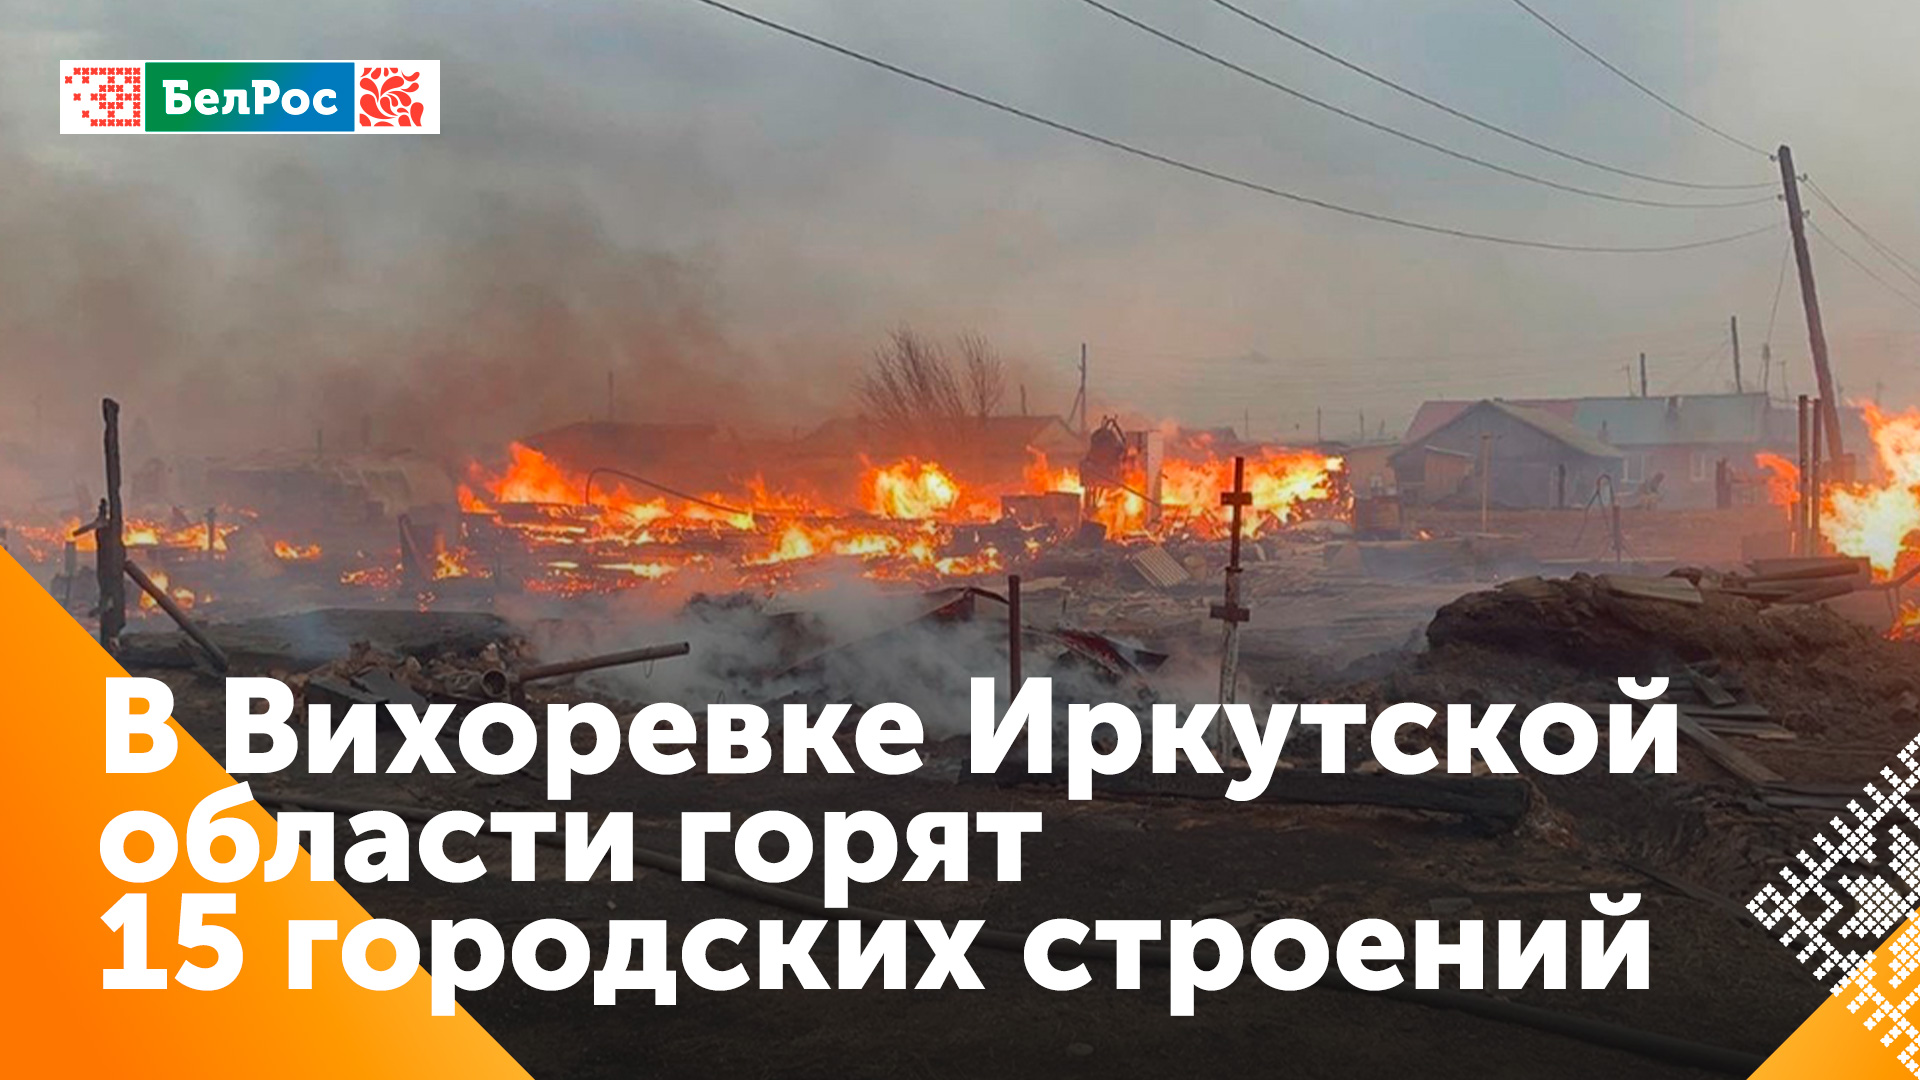 Несколько десятков домов и строений загорелись в Иркутской области